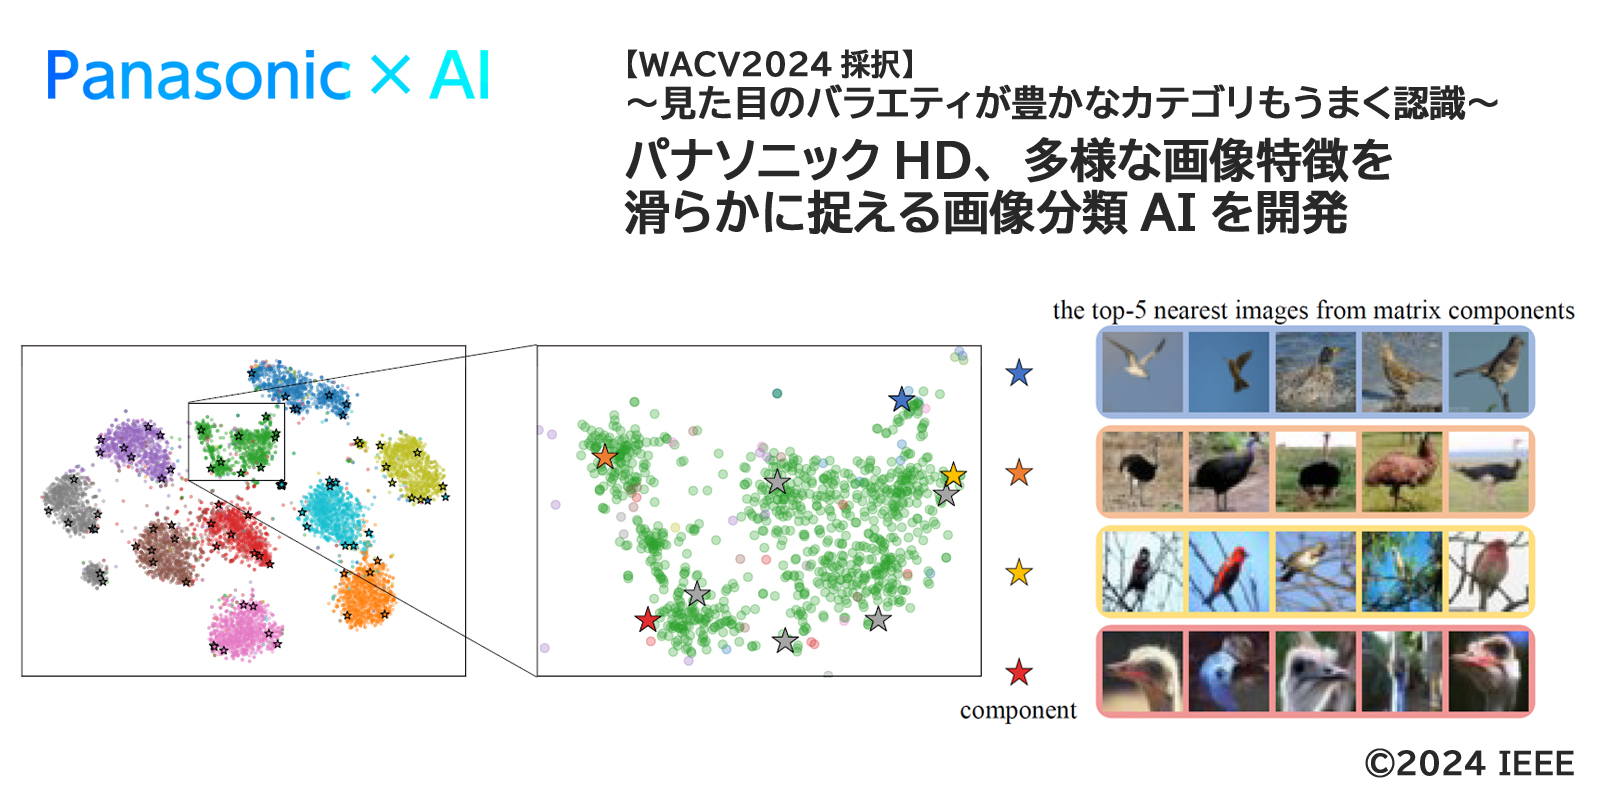 パナソニックHD、多様な画像特徴を滑らかに捉える画像分類AIを開発